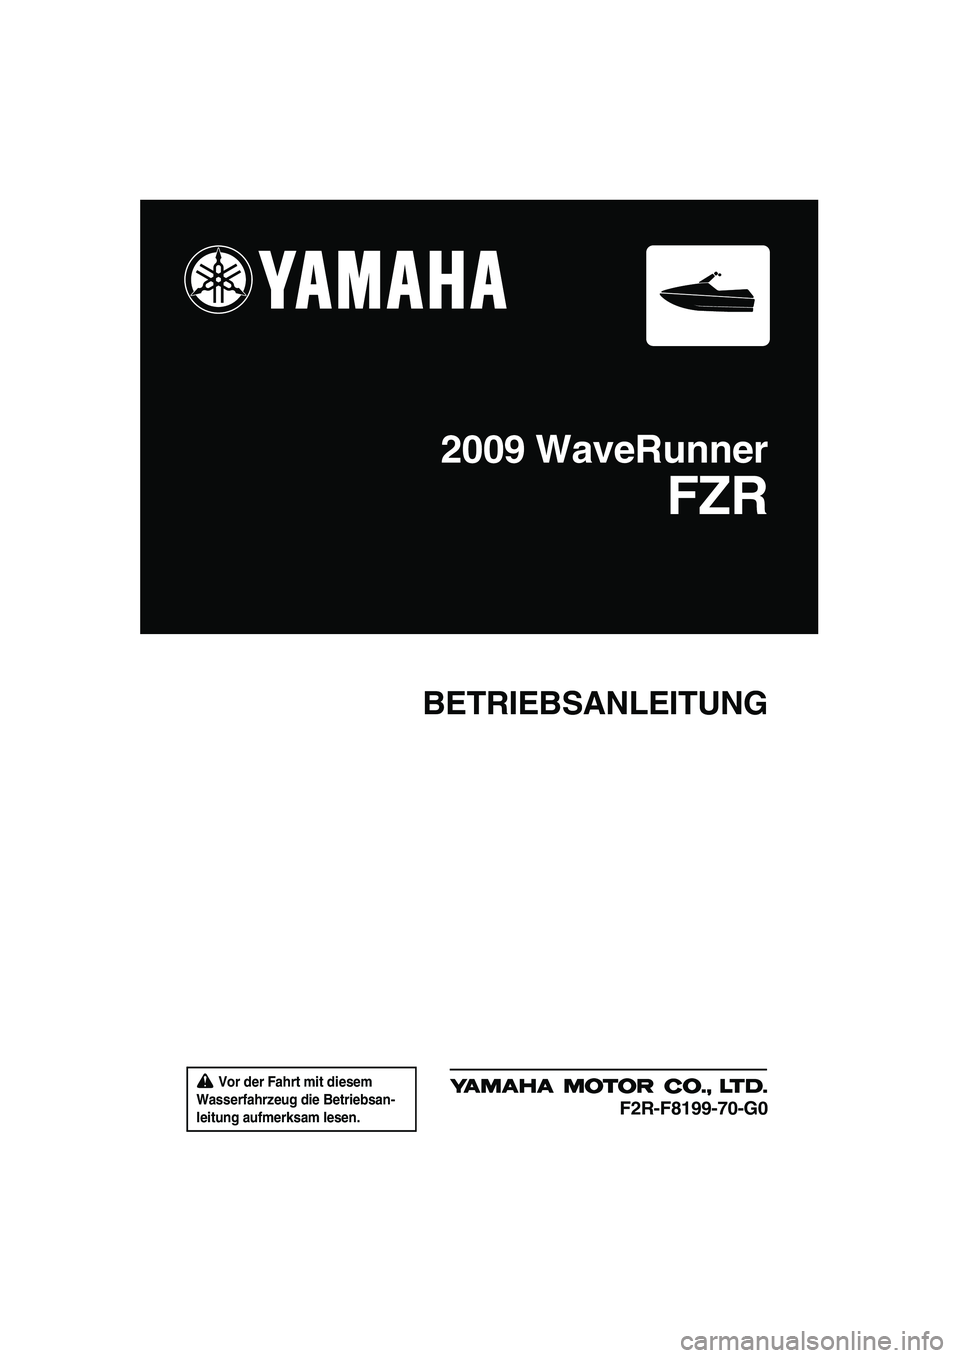 YAMAHA FZR 2009  Betriebsanleitungen (in German)  Vor der Fahrt mit diesem 
Wasserfahrzeug die Betriebsan-
leitung aufmerksam lesen.
BETRIEBSANLEITUNG
2009 WaveRunner
FZR
F2R-F8199-70-G0
UF2R70G0.book  Page 1  Friday, November 7, 2008  11:25 AM 